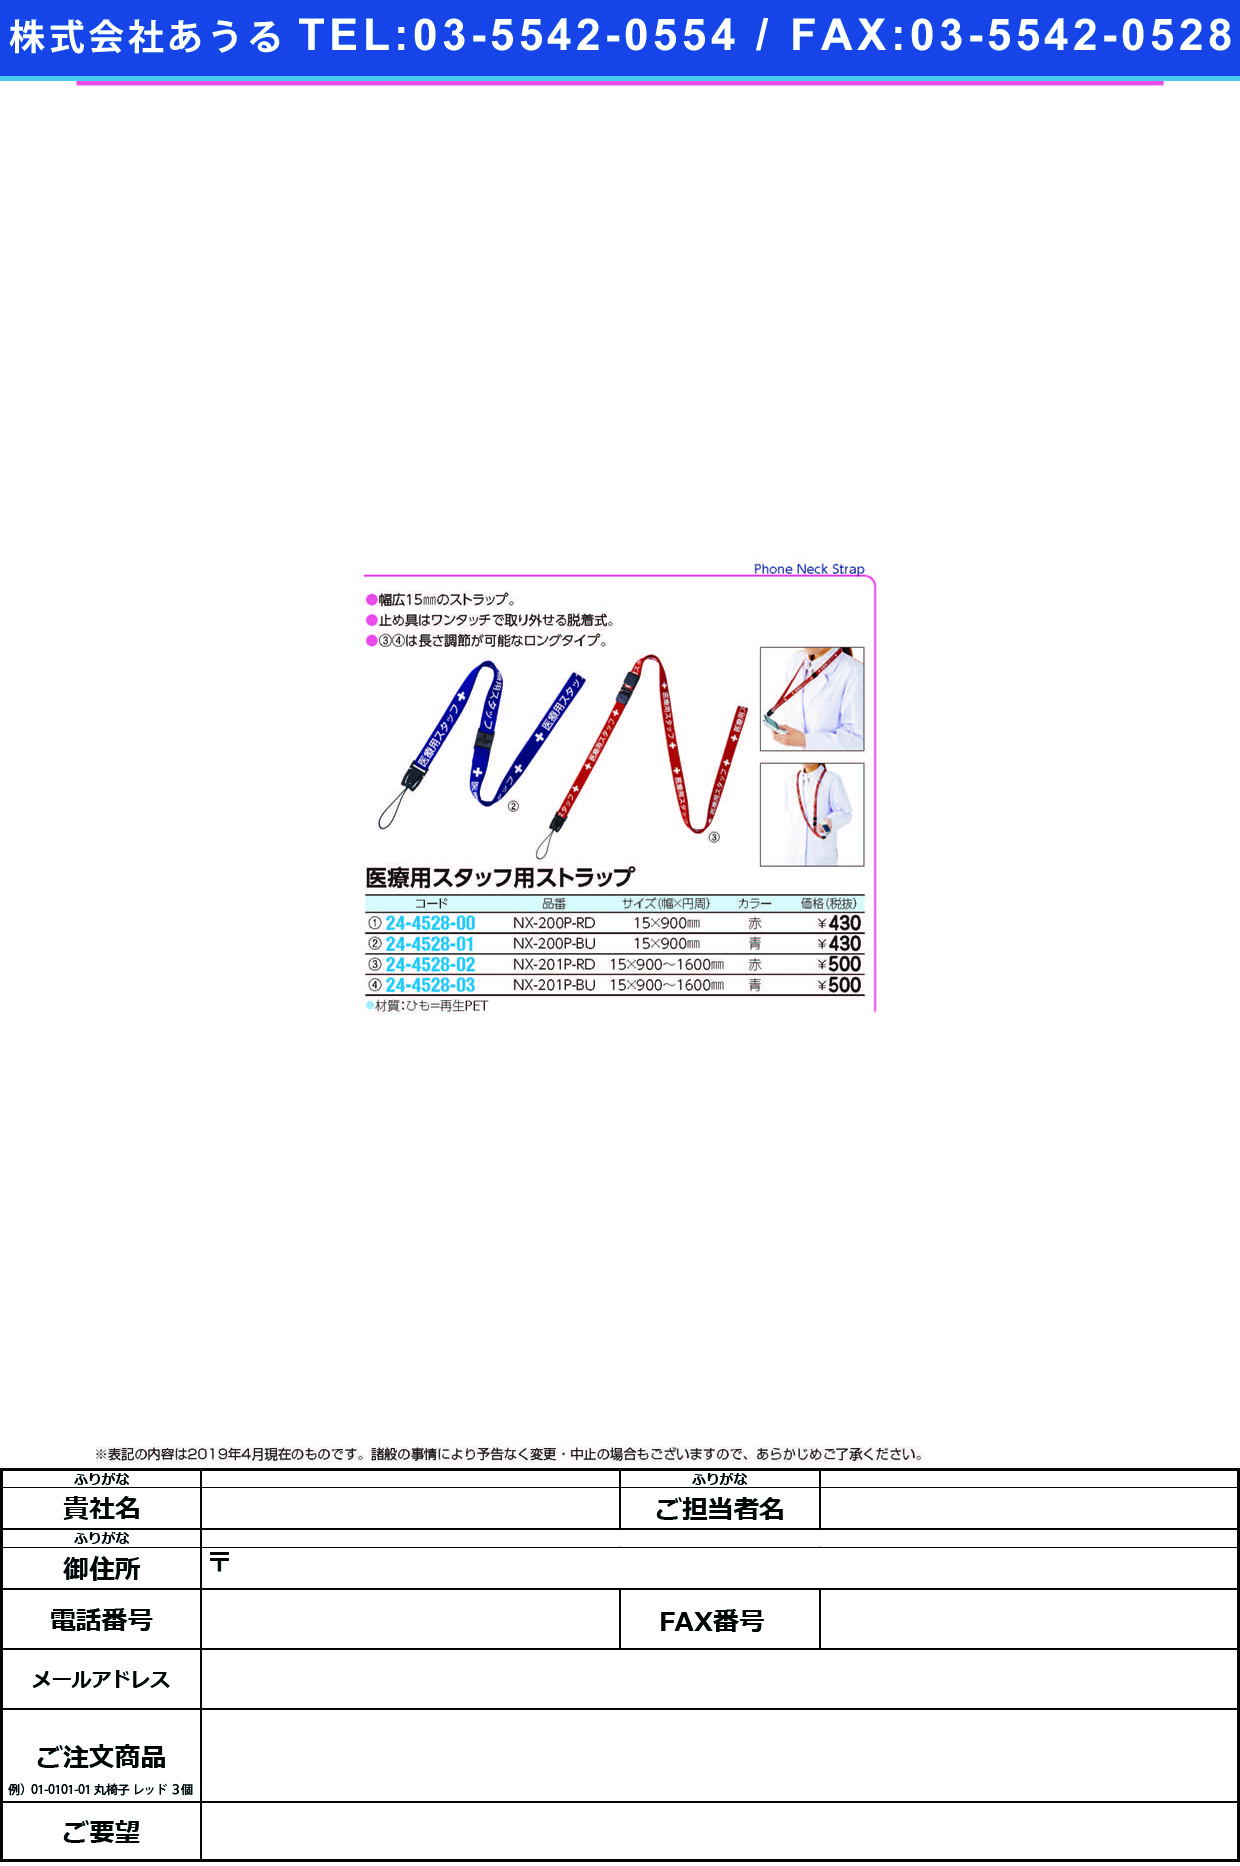 (24-4528-03)医療用スタッフストラップ１６００ｍｍ NX-201P-BU(ﾌﾞﾙｰ) ｲﾘｮｳﾖｳｽﾀｯﾌｽﾄﾗｯﾌ【1本単位】【2019年カタログ商品】